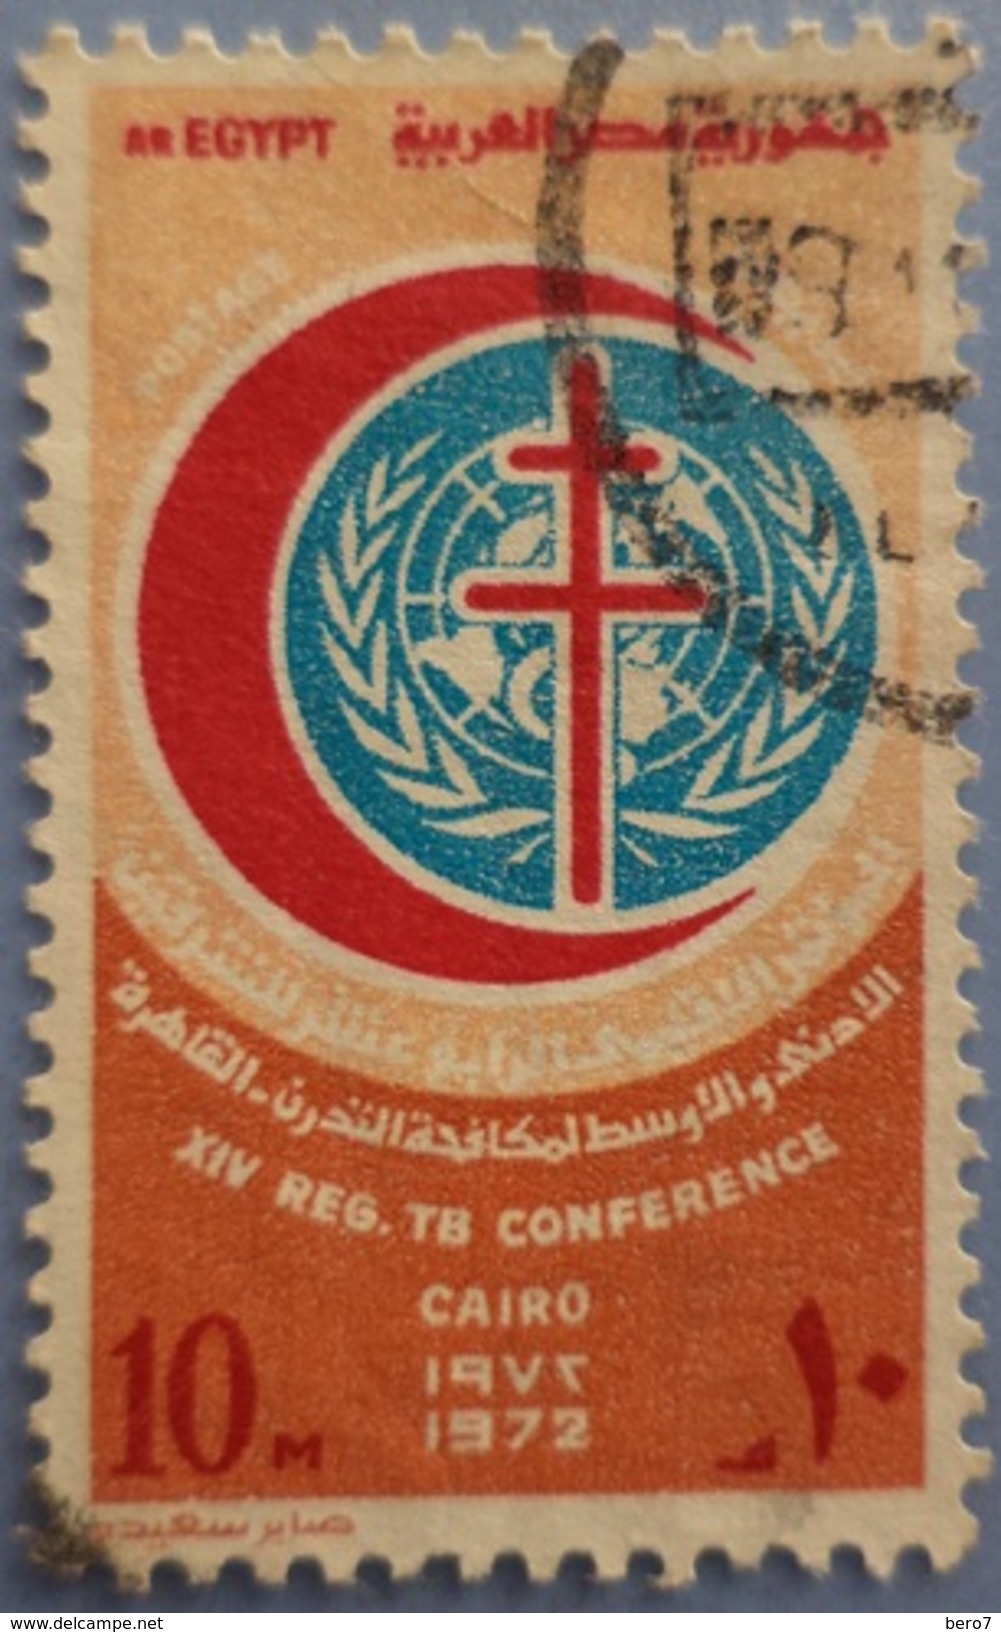 ُEGYPT 1972 XIV REG. TB Conference [USED] (Egypte) (Egitto) (Ägypten) (Egipto) (Egypten) - Oblitérés